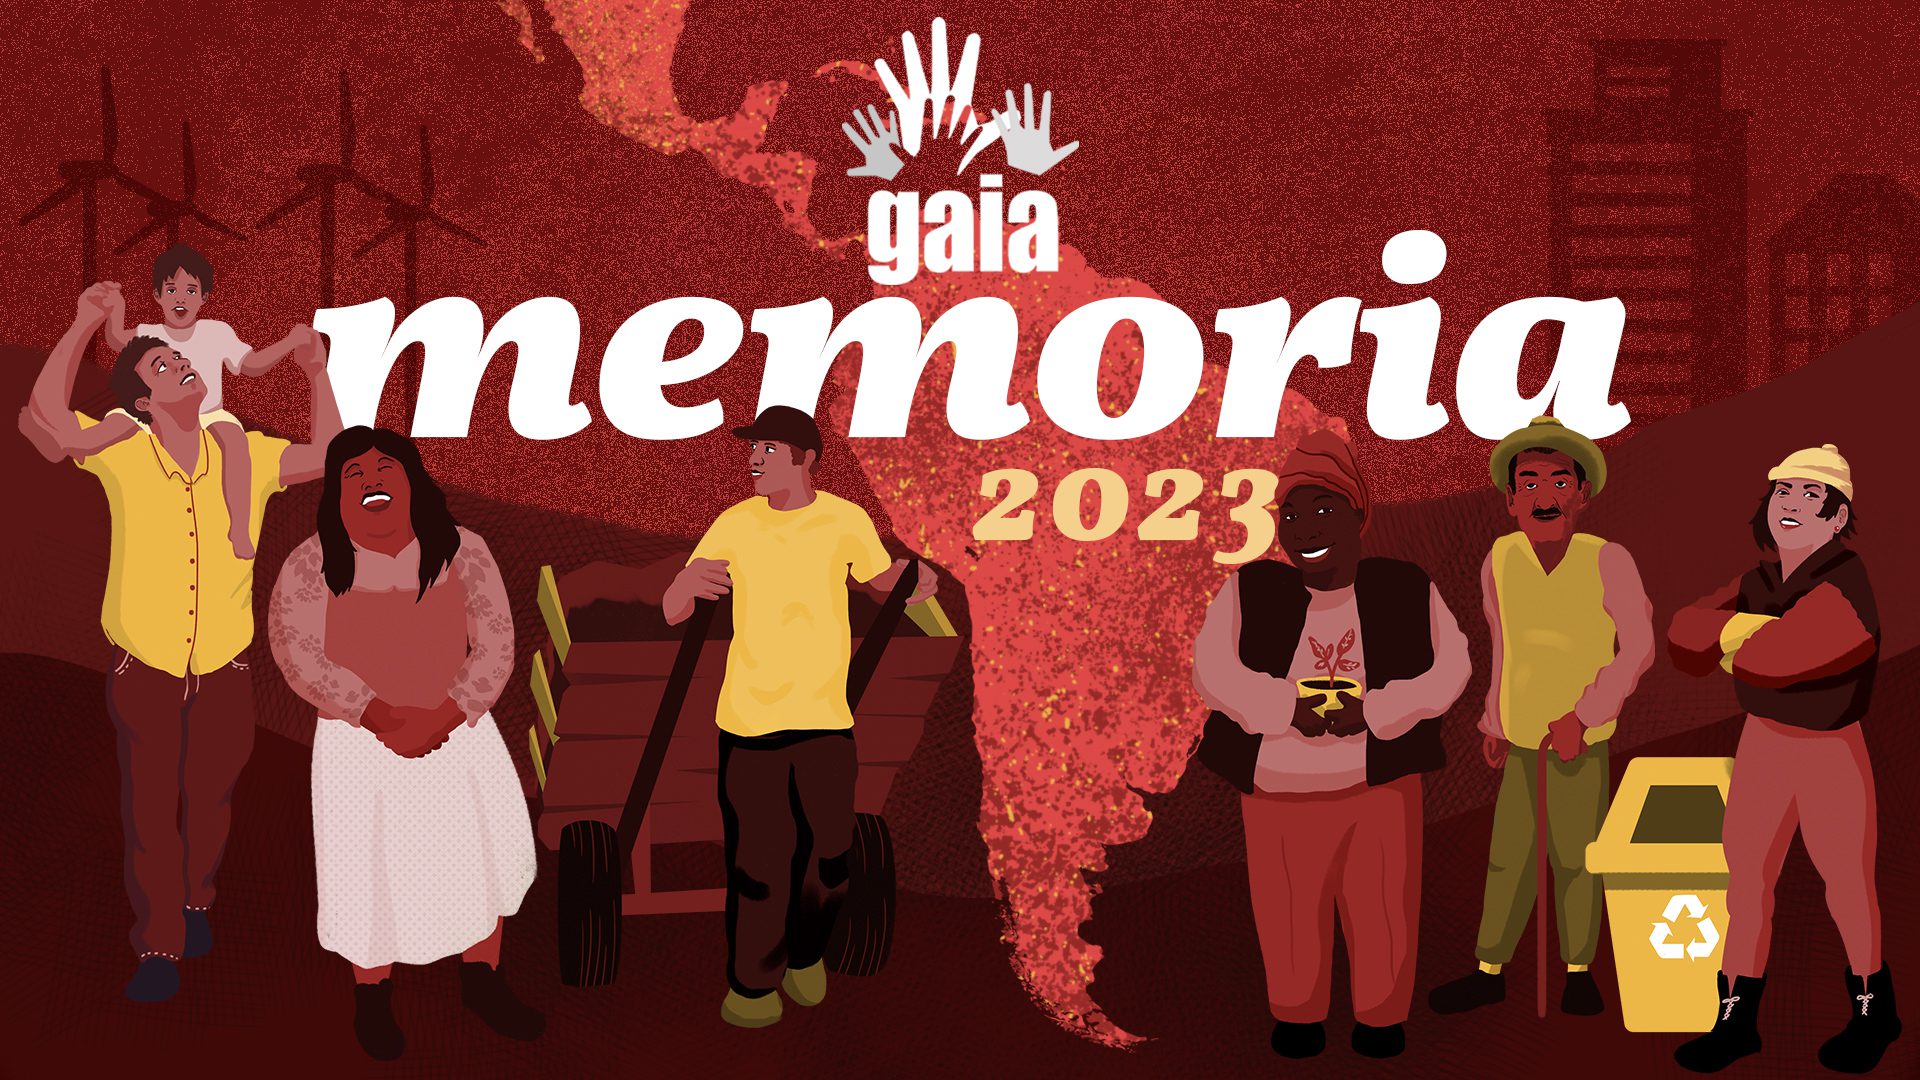 Portada memoria GAIA 2023. Fondo rojo con una mapa de America Latina y 6 personajes ilustrados que Representativean an los miembros de GAIA.